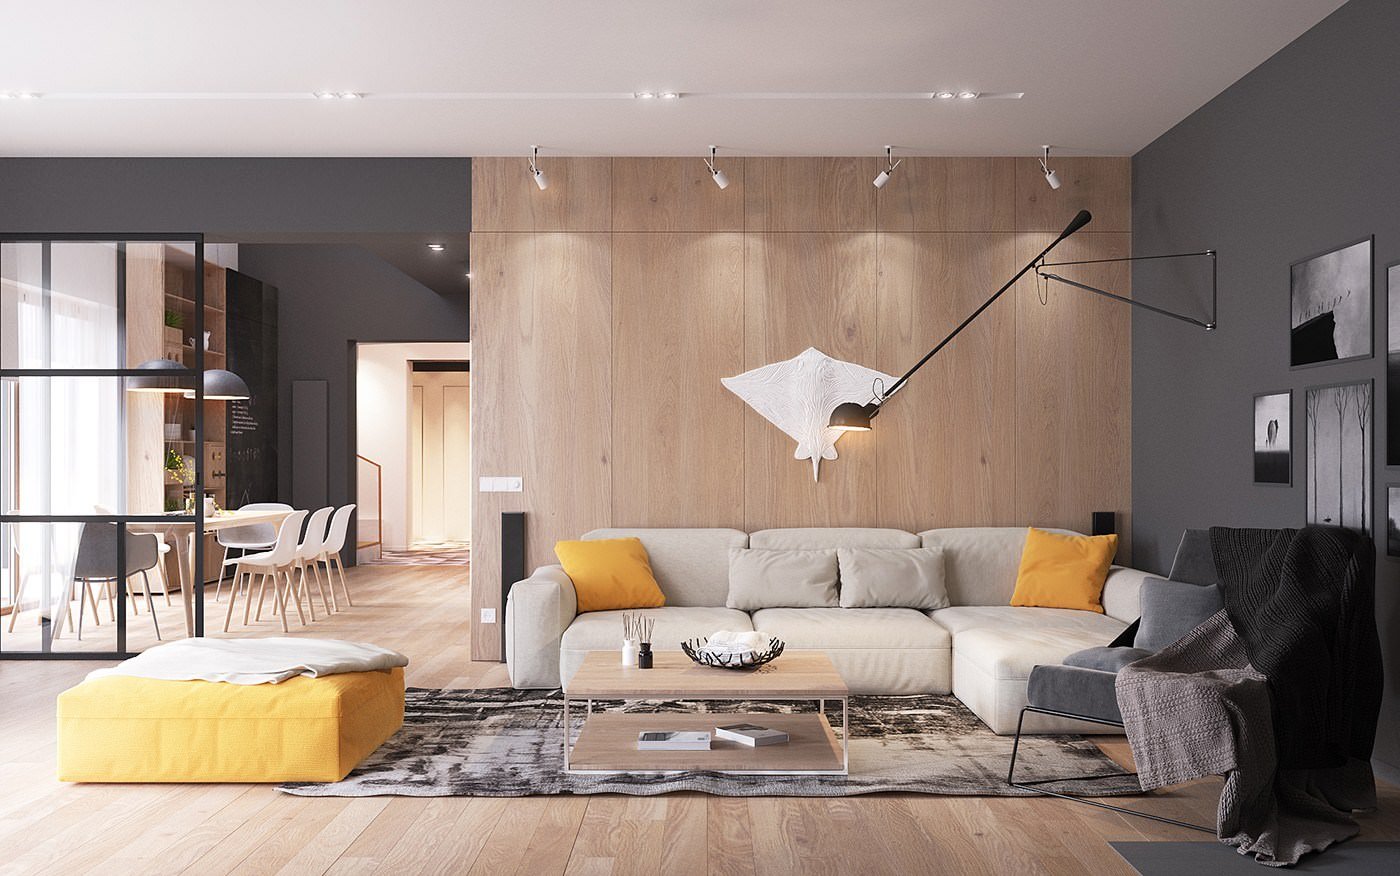 Idea soggiorno scandinavo moderno con accenti di colore giallo in un contesto grigio neutro e rivestimento in legno chiaro - idee arredamento scandinavo